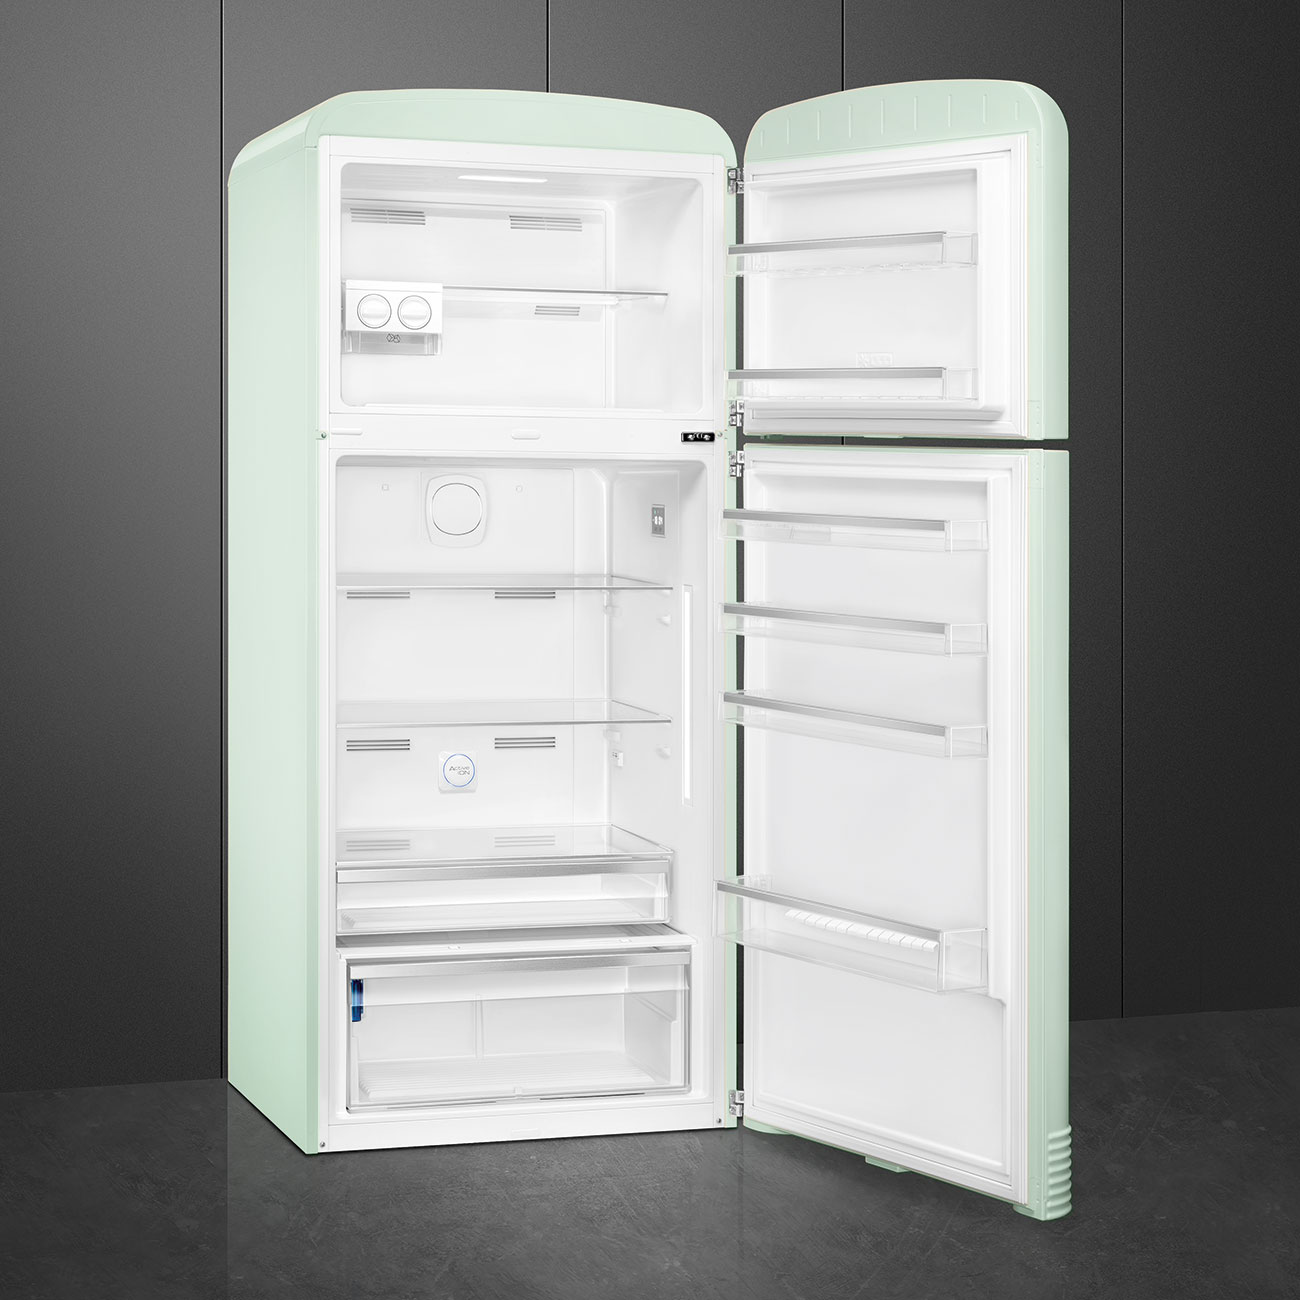 Watergroen koelkast - Smeg_5